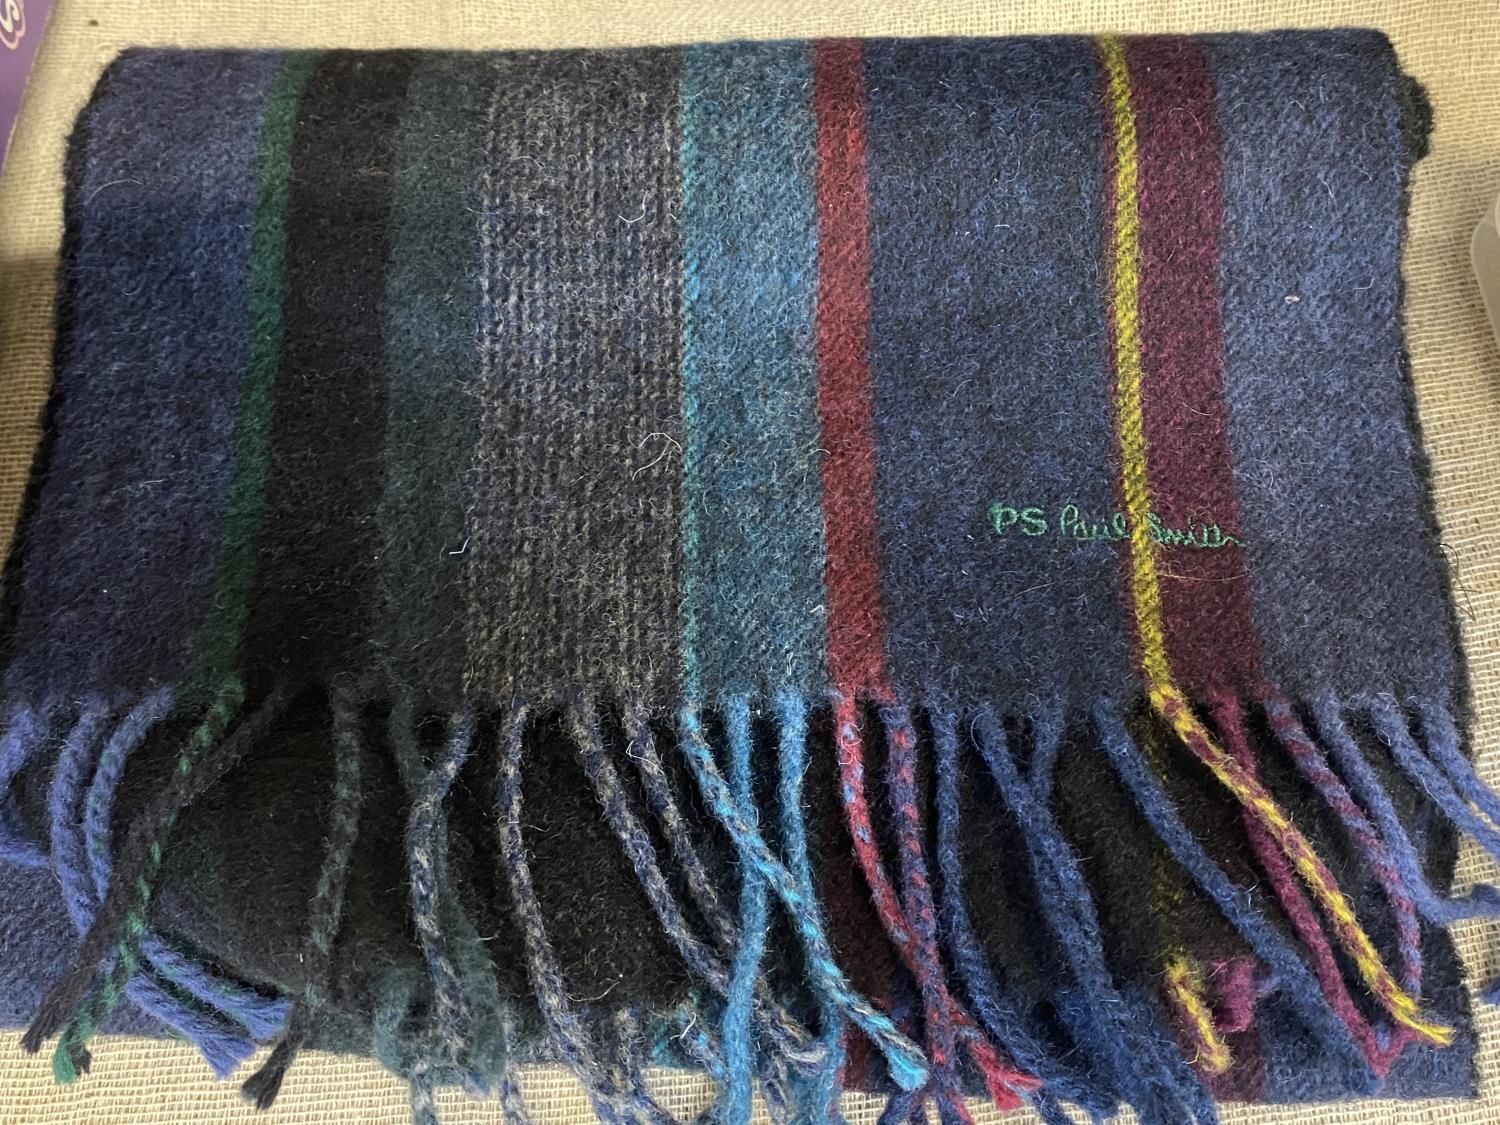 A Paul Smith scarf